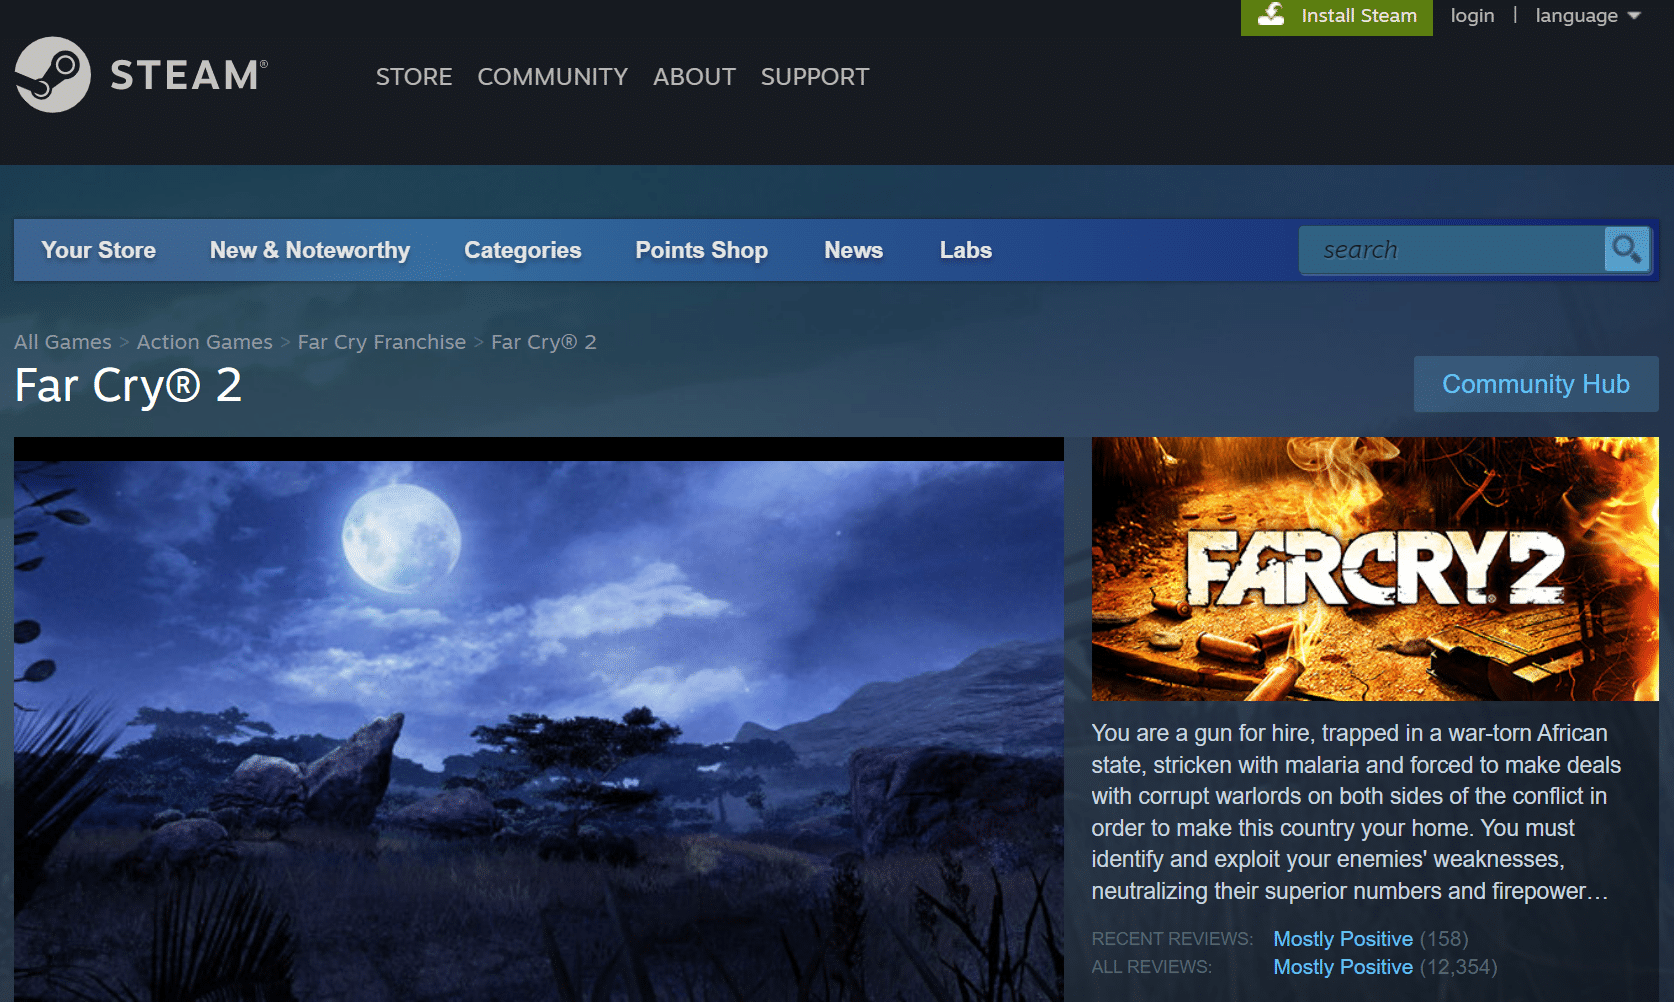 Far Cry 2. ローエンド PC 向けの 36 のベスト オープン ワールド ゲーム